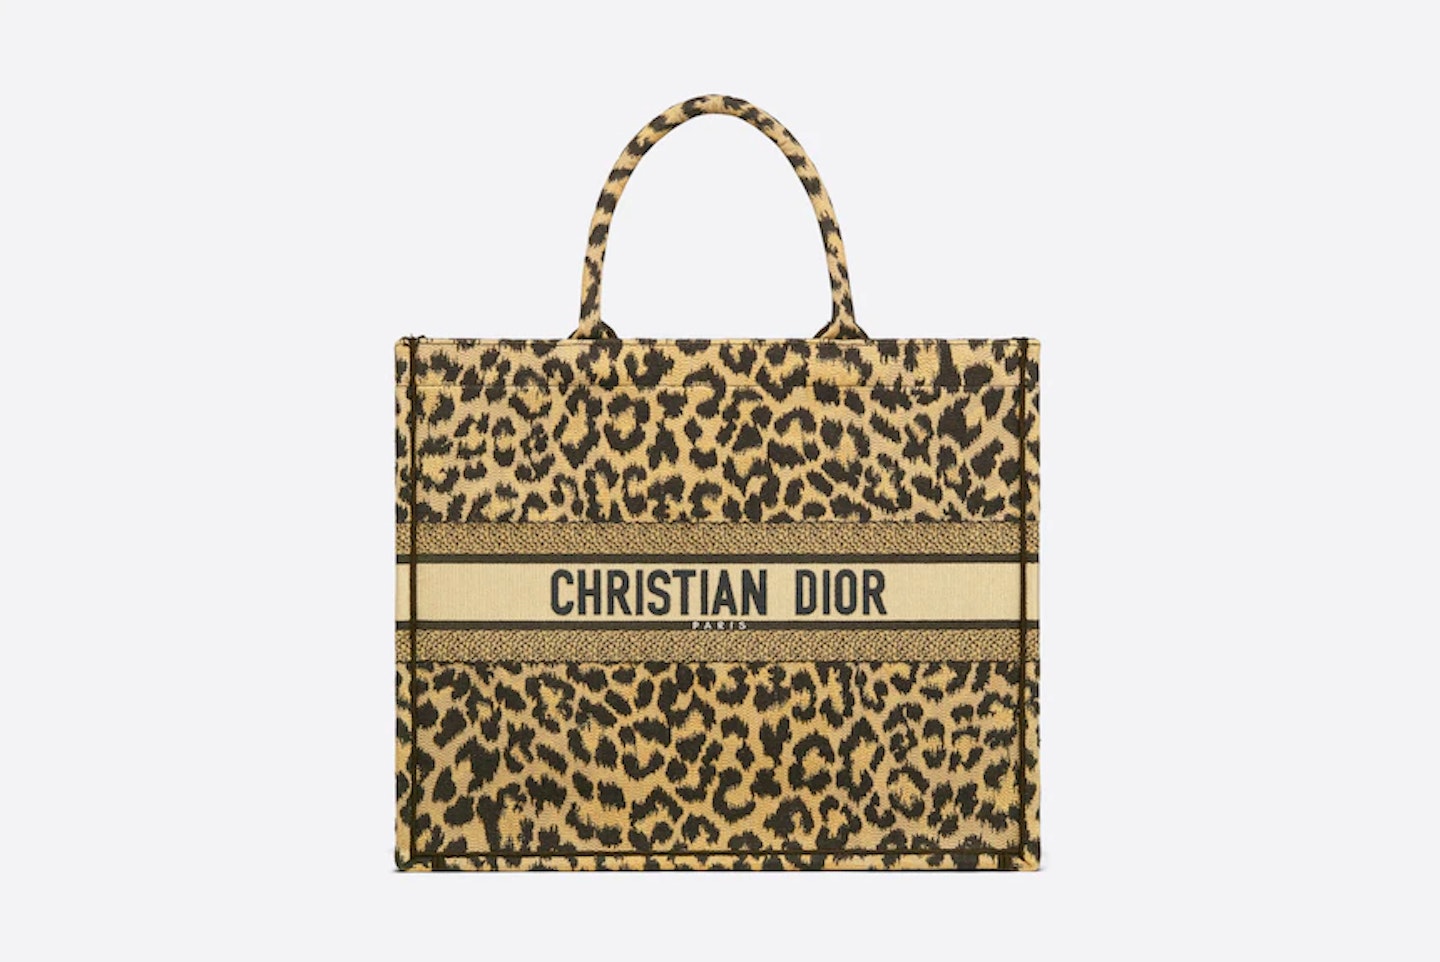 Christian Dior, Dior Book Tote in Mizza Embroidery, £2,650